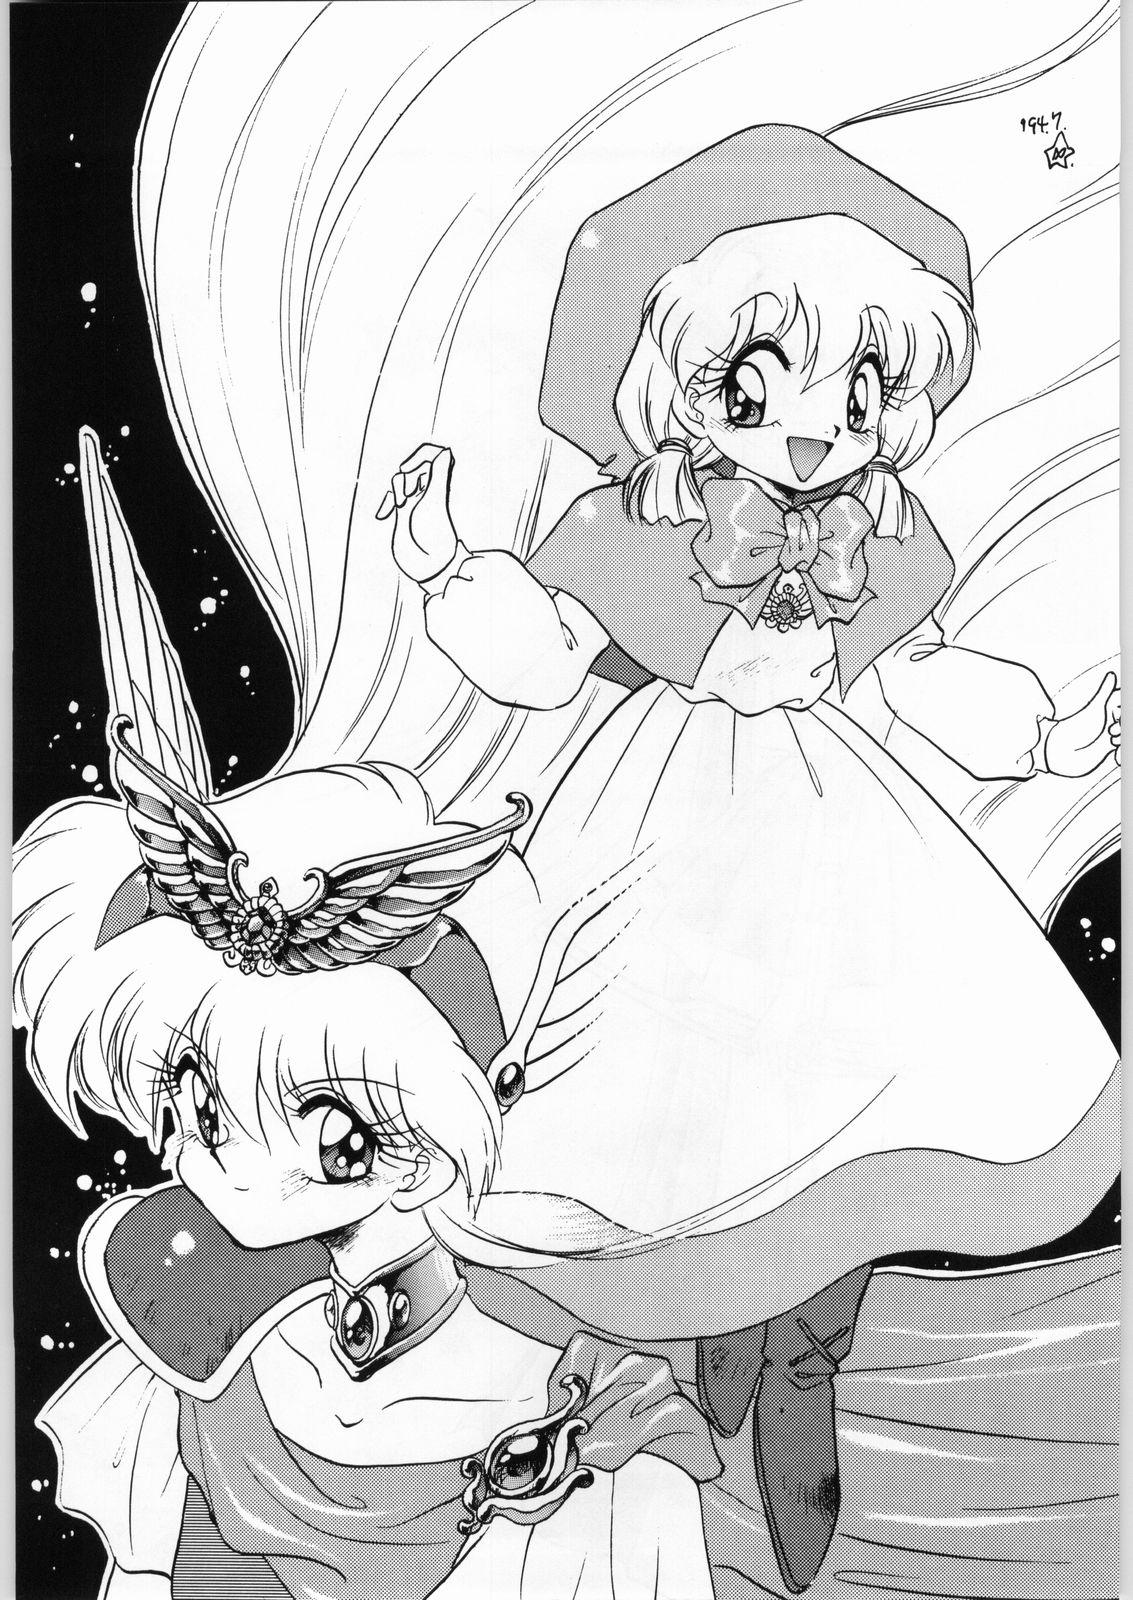 Eating Dance of Princess 3 - Sailor moon Tenchi muyo Akazukin cha cha Minky momo Ng knight lamune and 40 Tites - Page 4